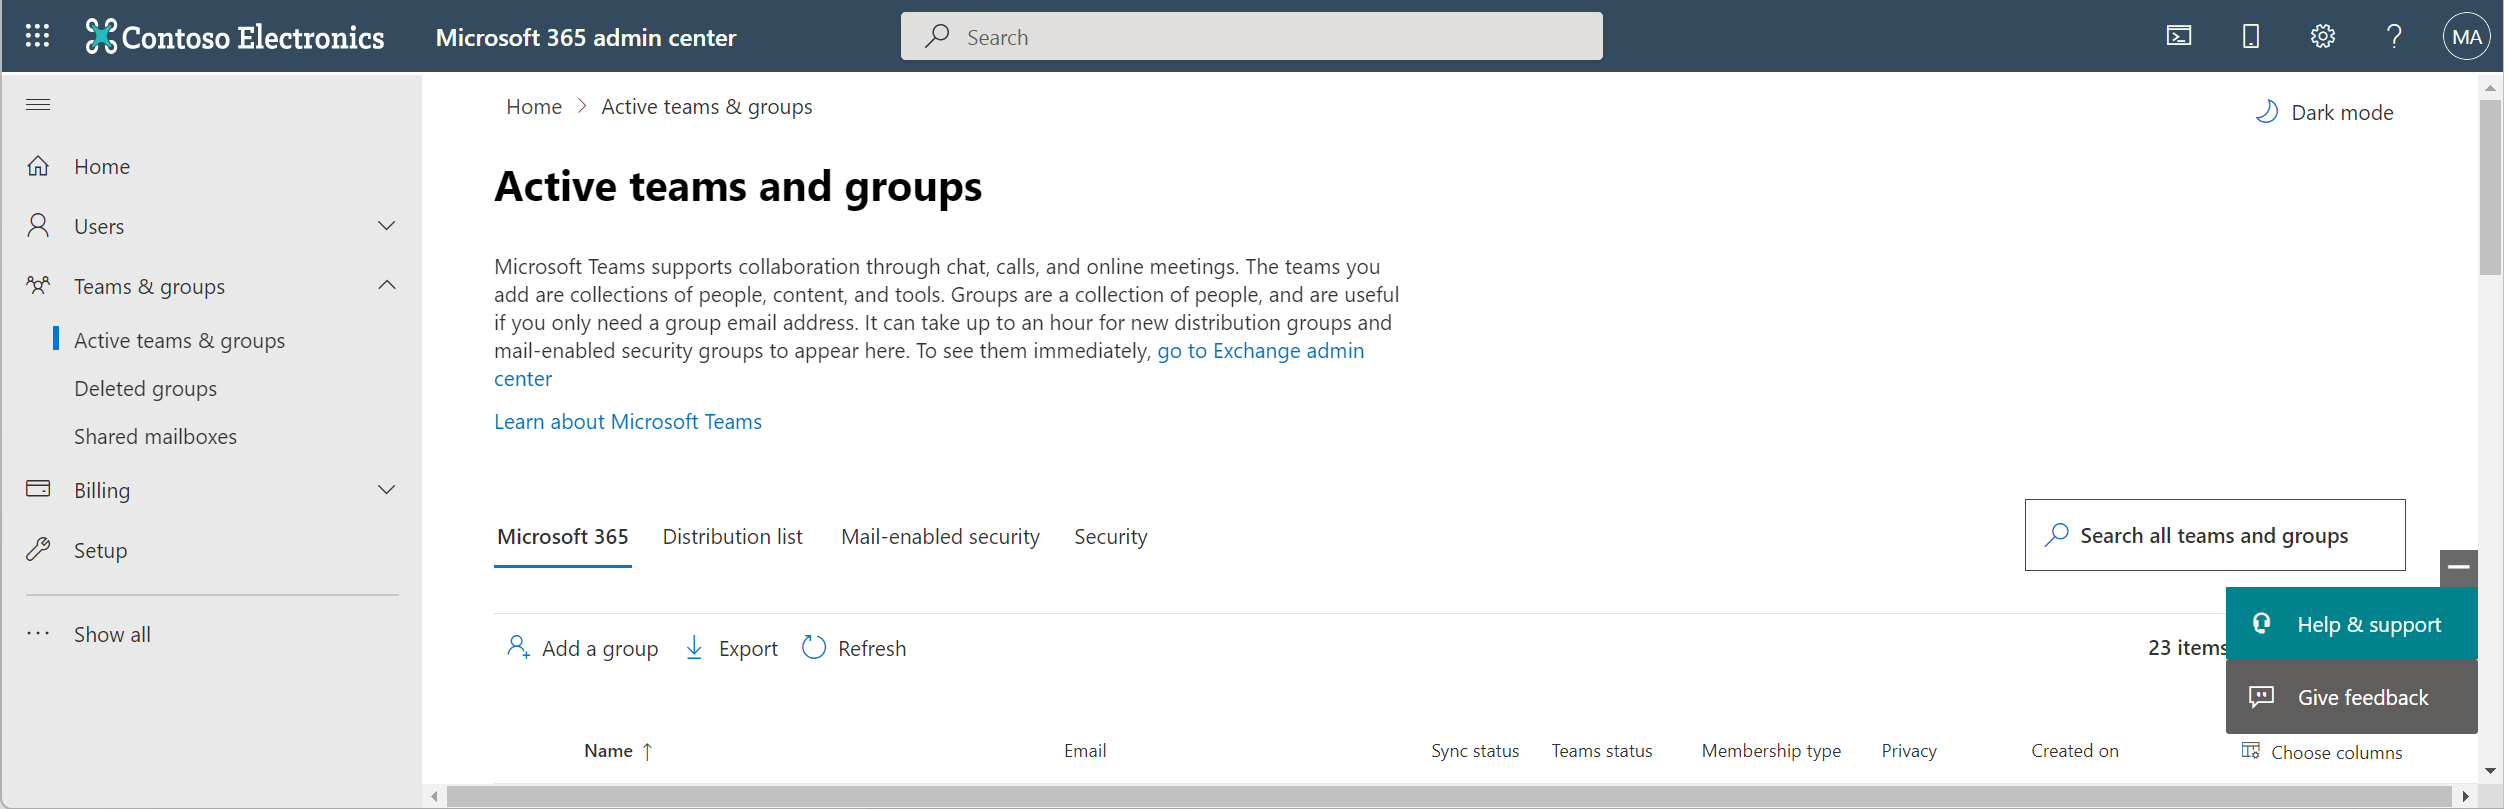 Captura de pantalla que muestra los grupos activos en el Centro de administración de Microsoft 365.